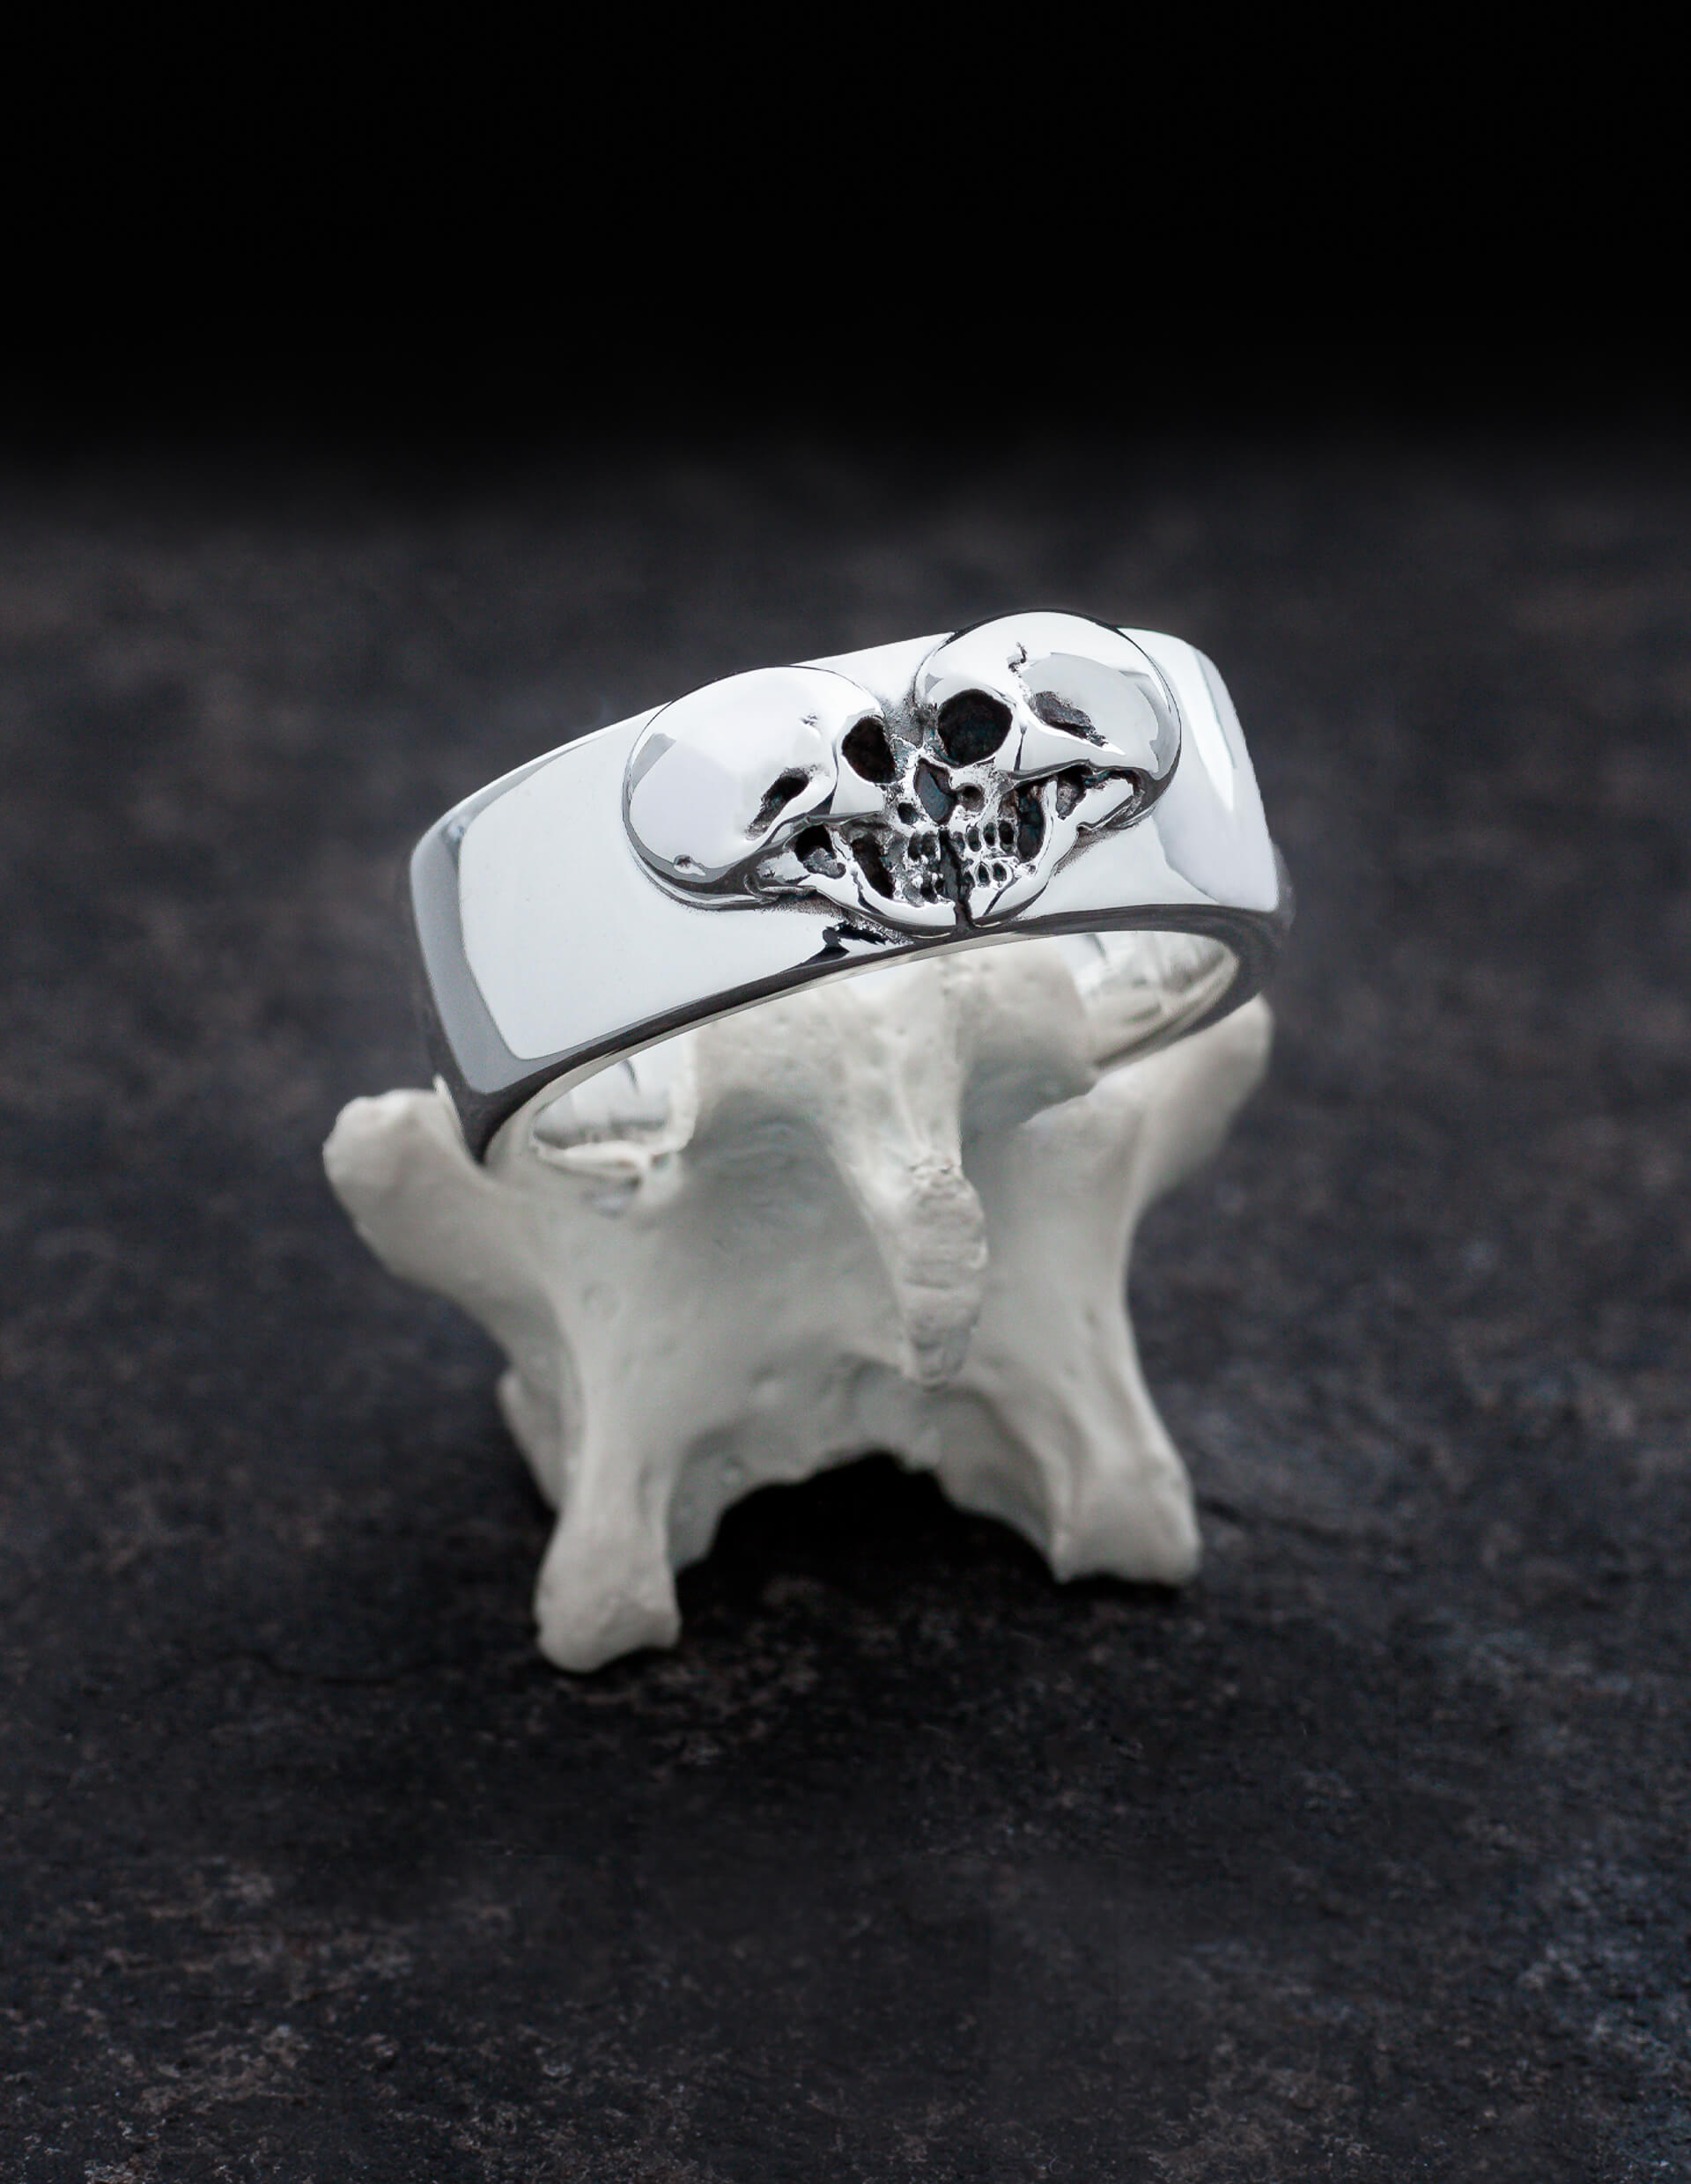 Kissing Skulls ist ein schwerer gothic Ehering. Zwei Totenköpfe im Profil sind in Form eines Herzens angeordnet. Die Form des Ringes ist breit und leicht flach gewölbt mit abgerundeten Kanten. Der Ring ist in diesem Bild auf einem Knochen drapiert.